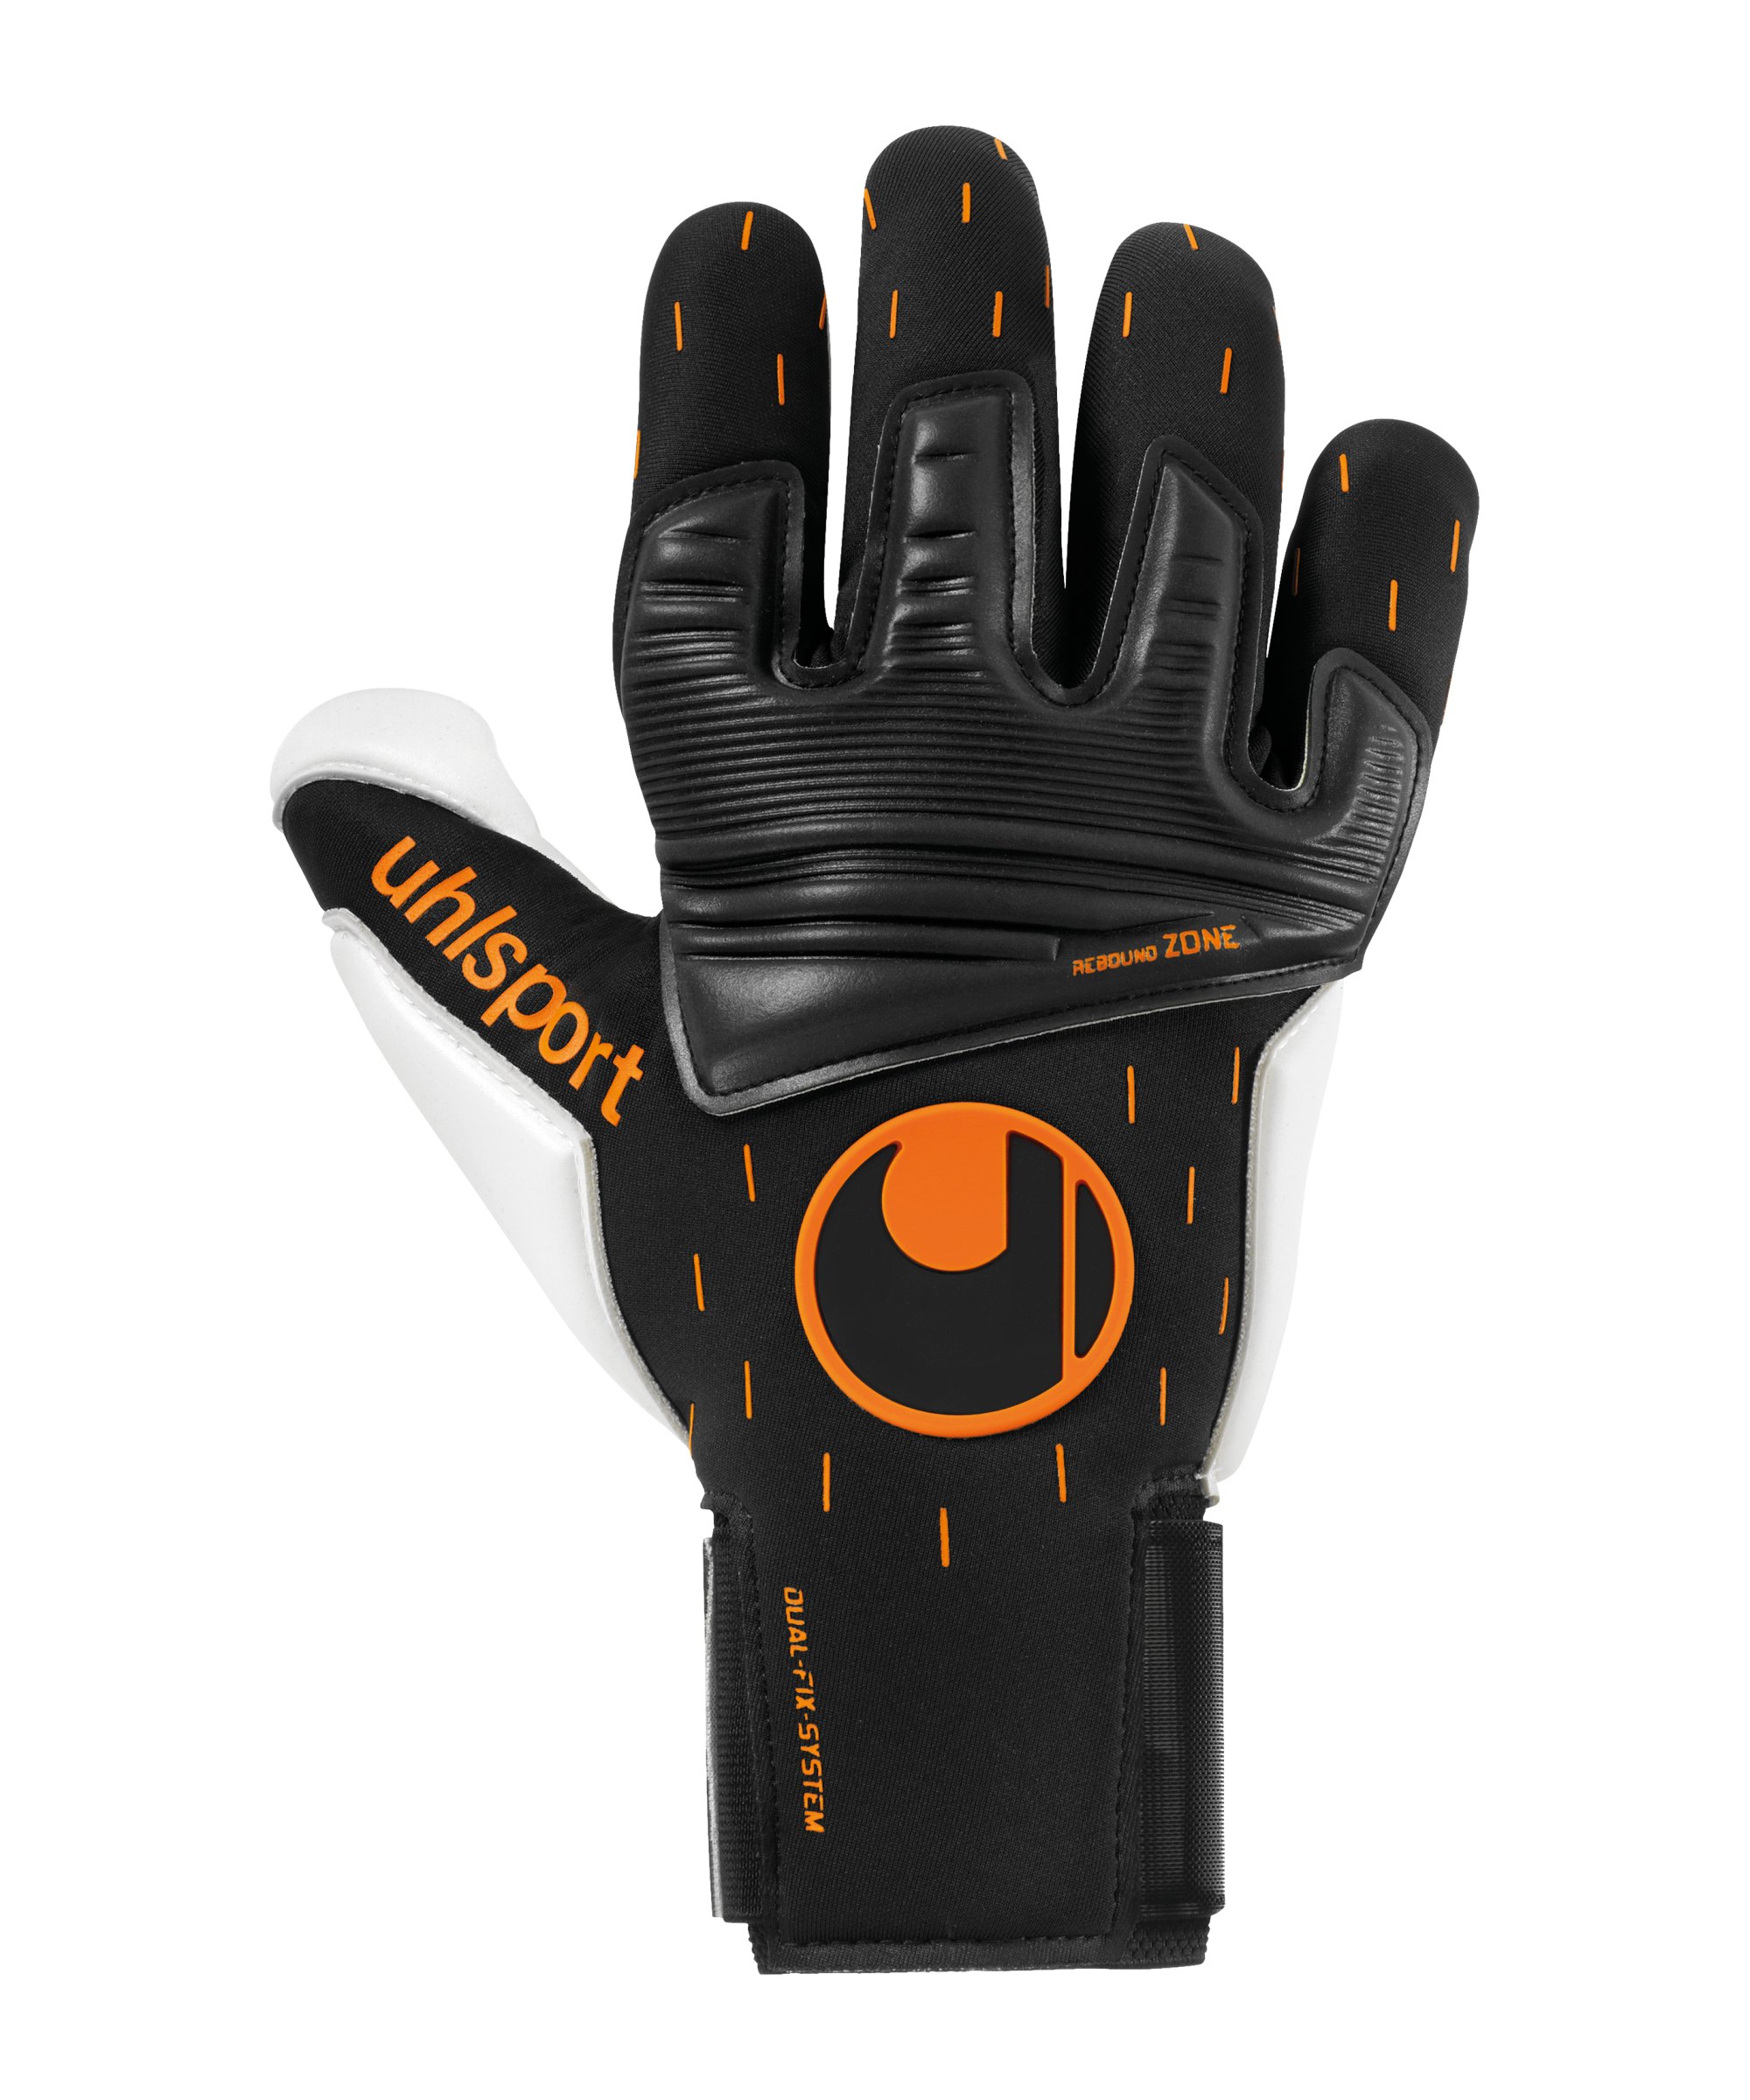 Uhlsport Absolutgrip Reflex Speed Contact TW-Handschuhe Schwarz Weiss Orange F01 - schwarz